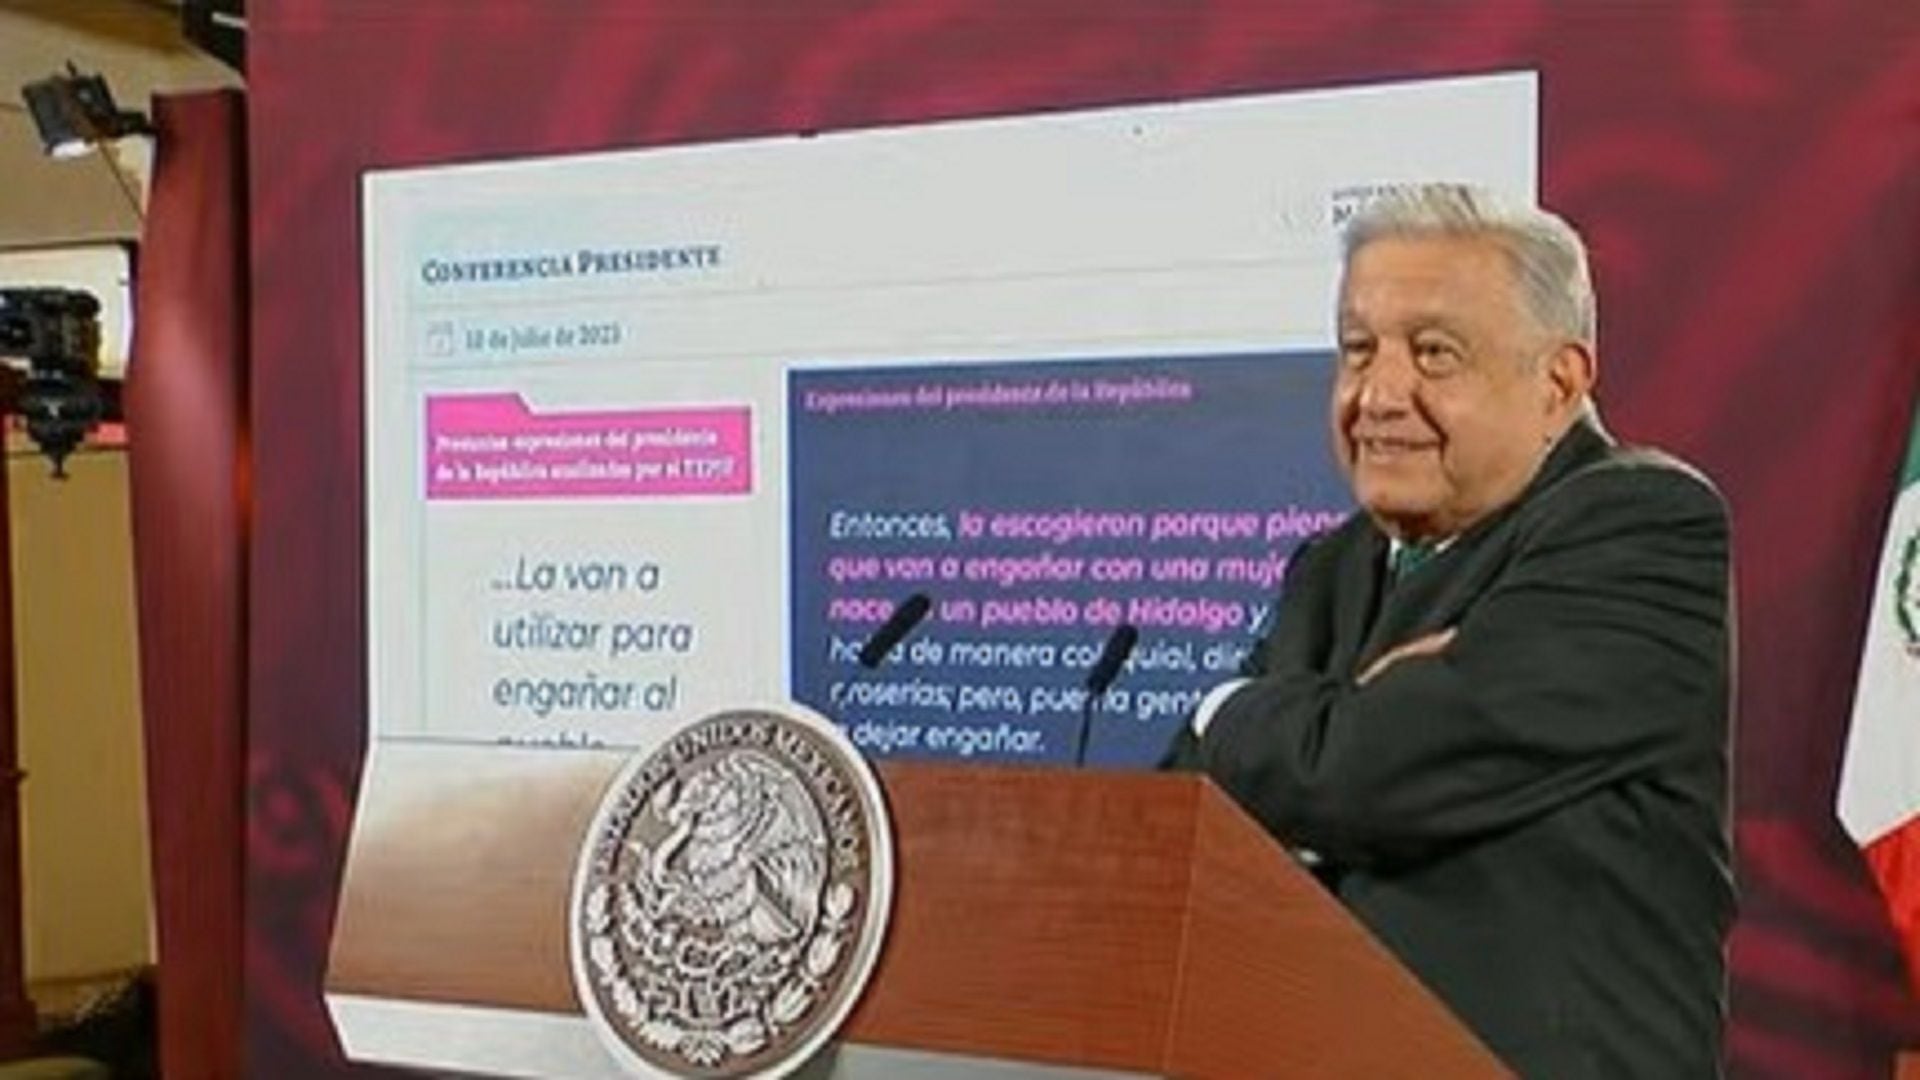 El presidente López Obrador revisó las tres frases con las que el TEPJF sustentó la sanción en su contra. (Presidencia)